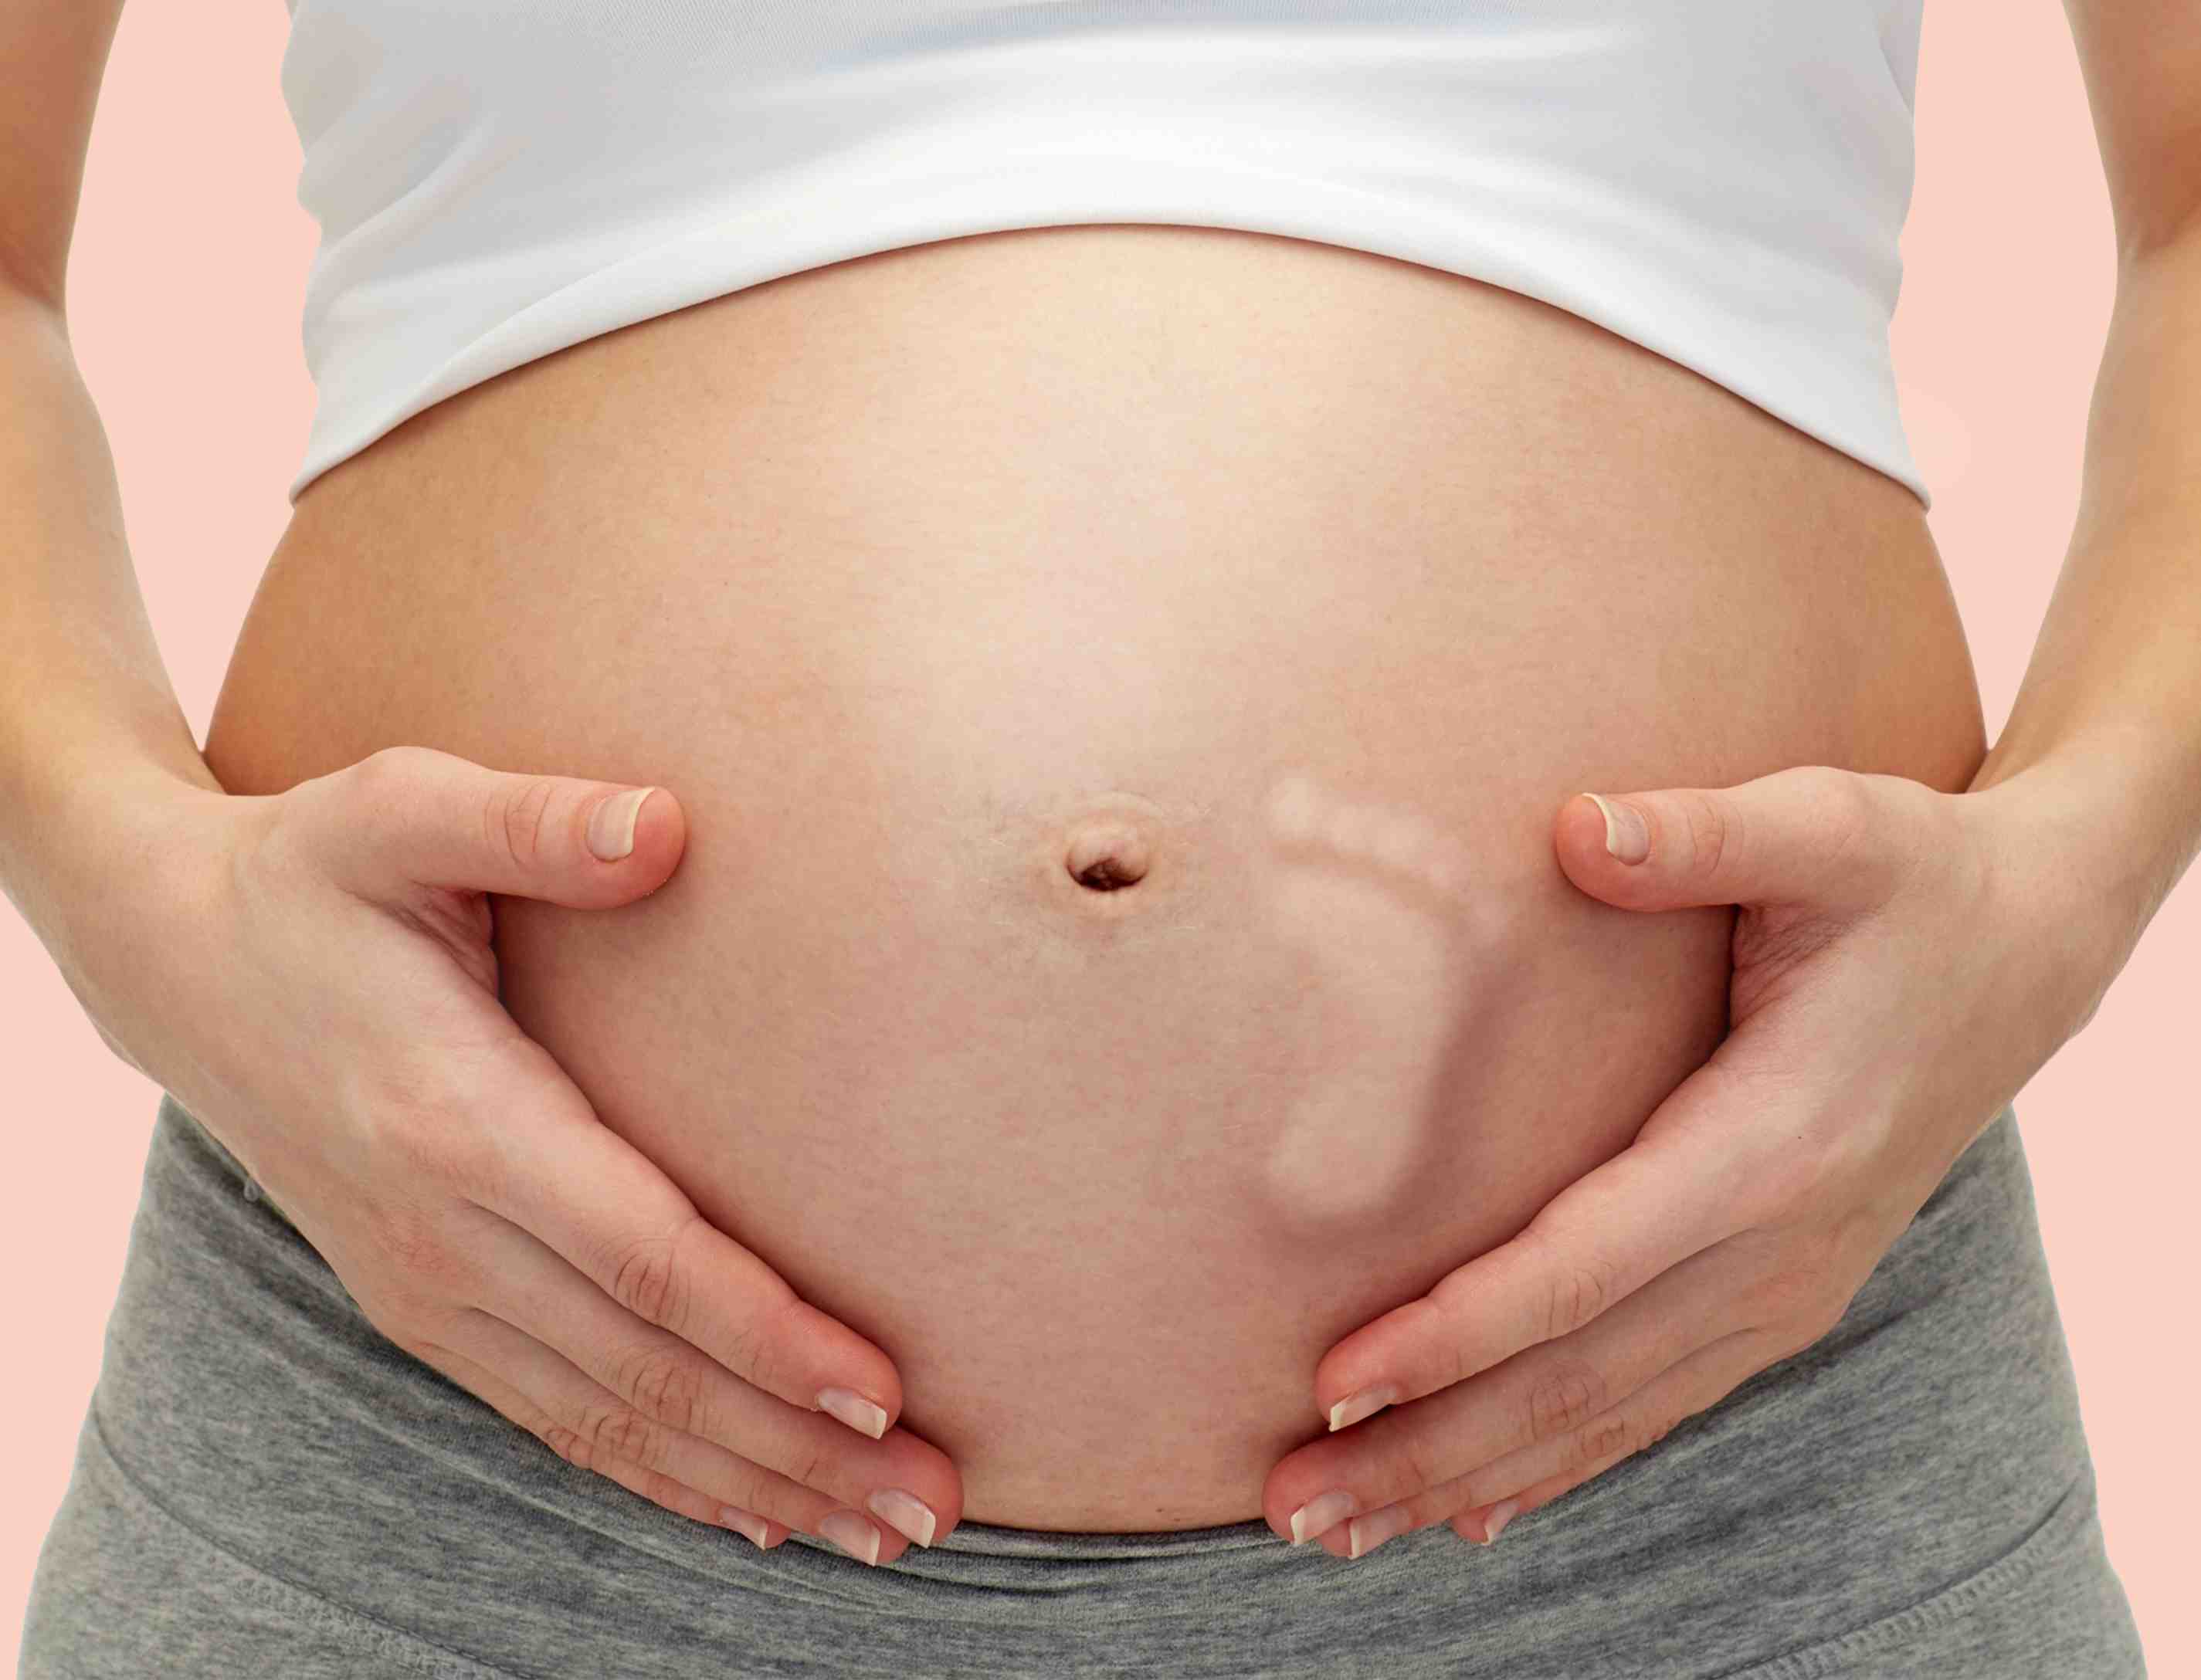     Những thay đổi trong cơ thể của phụ nữ mang thai tháng thứ 5.  (Ảnh: Sưu tầm Internet)